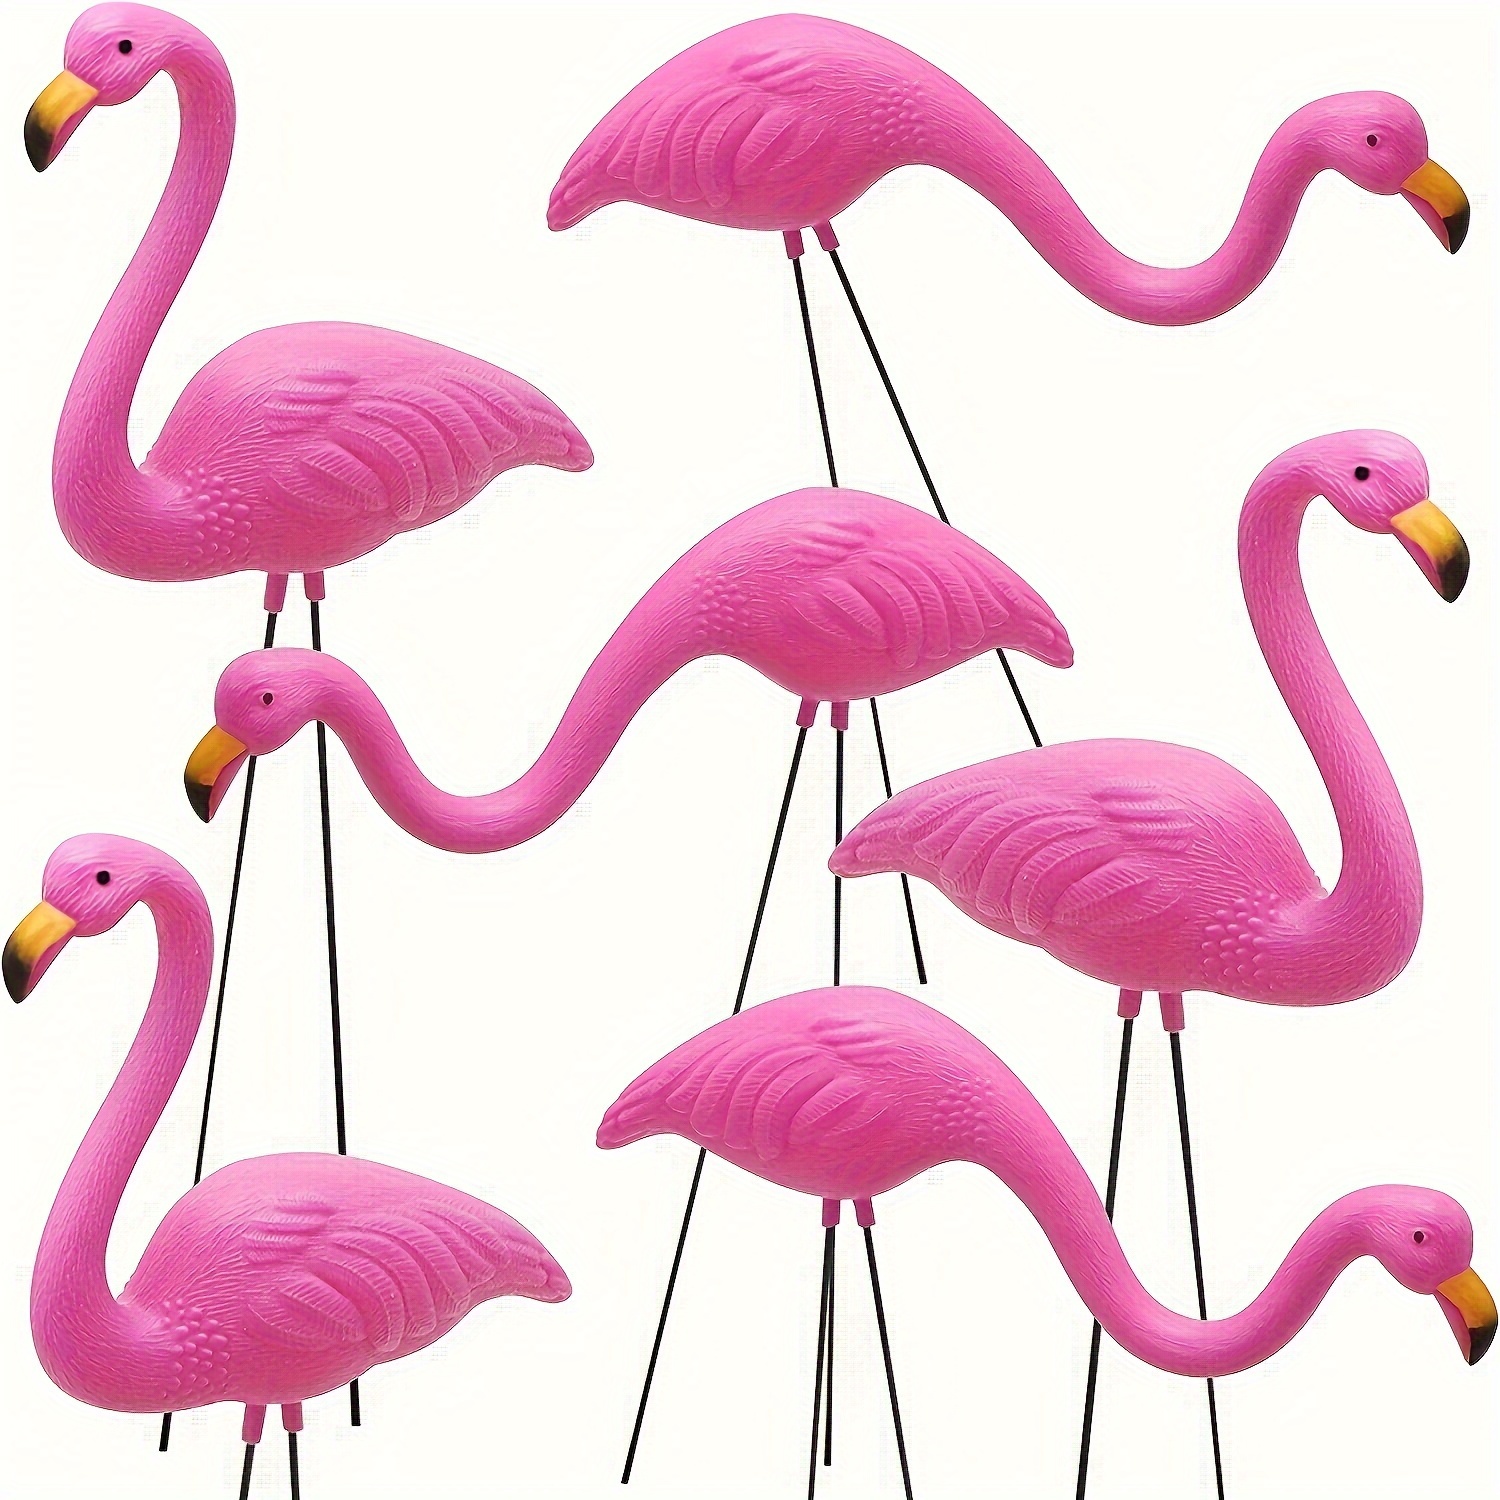 Aufblasbarer Flamingo - Kostenloser Versand Für Neue Benutzer - Temu Austria